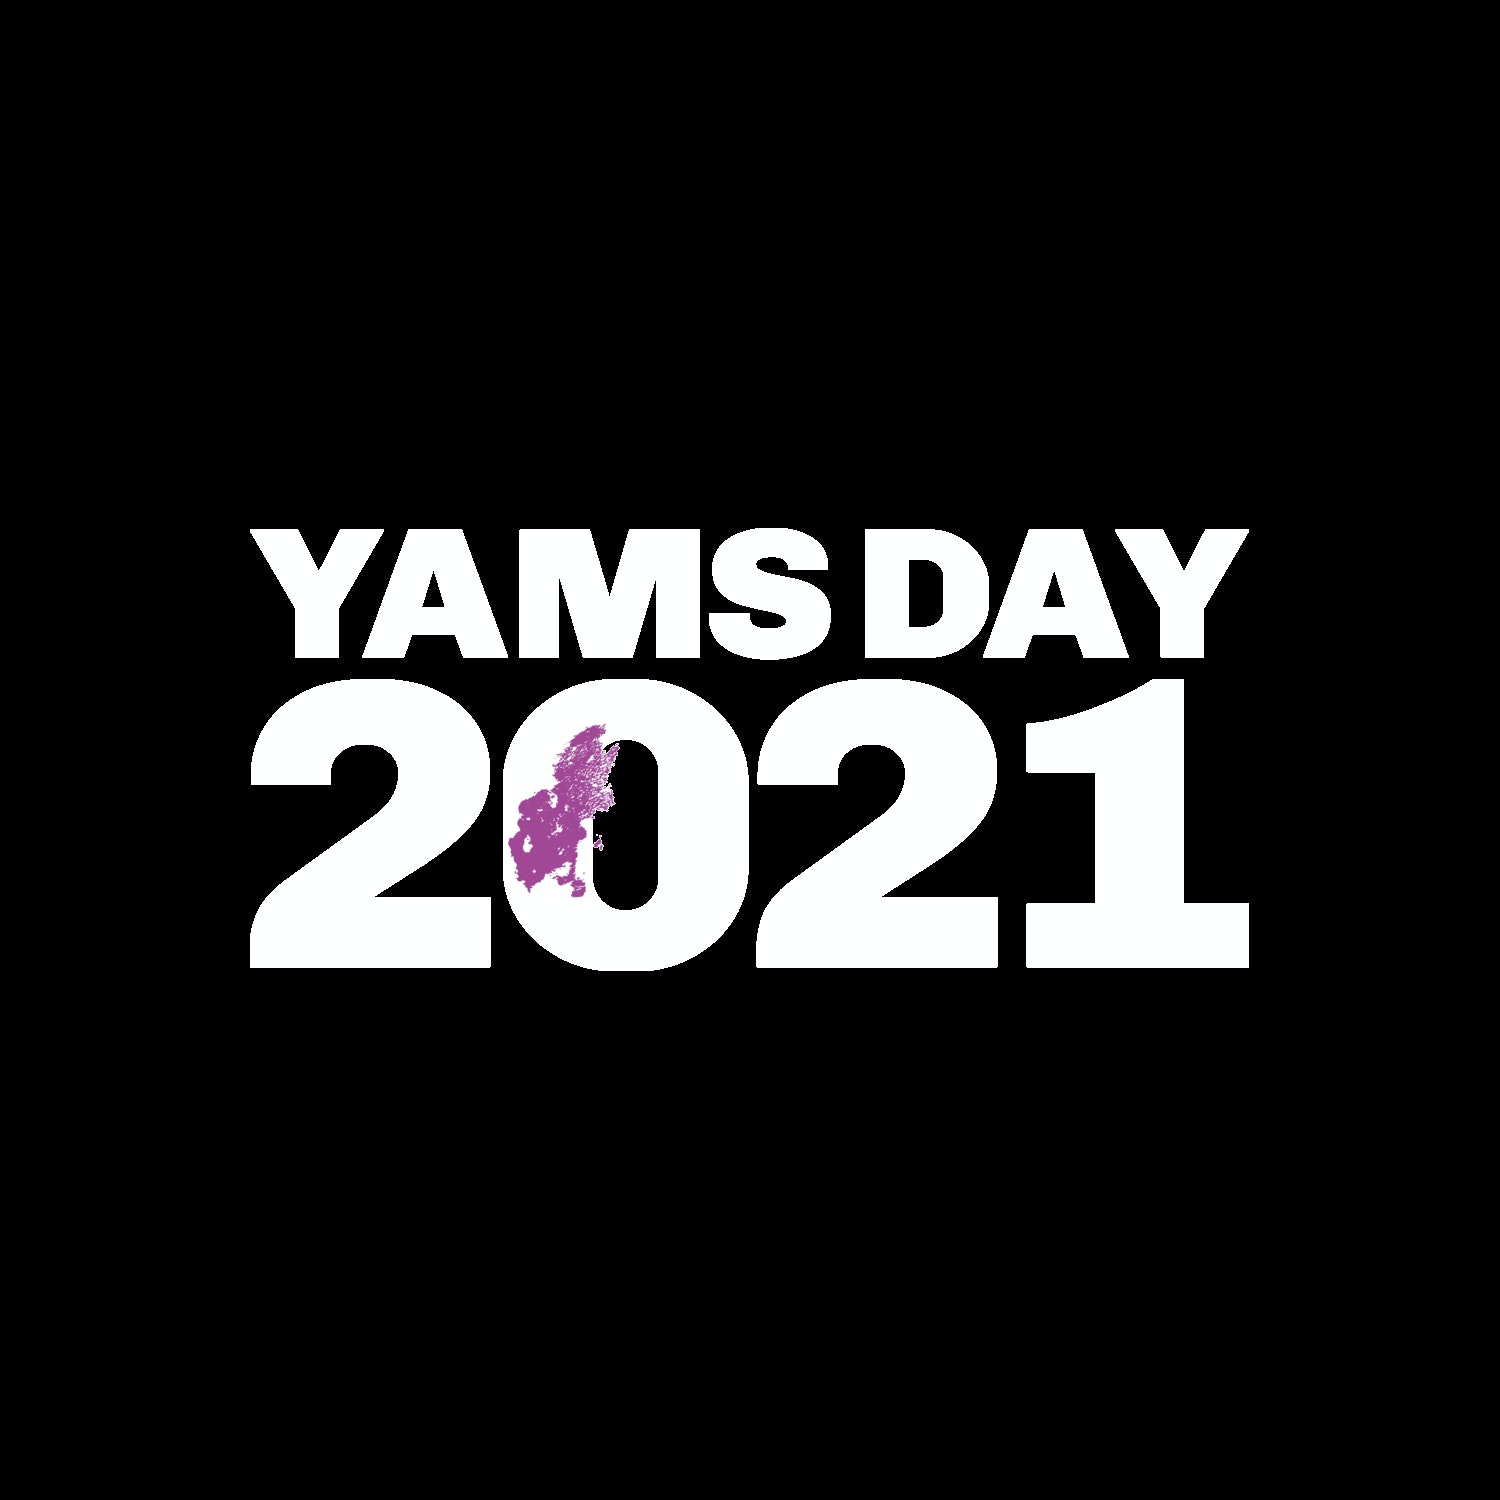 yams day 2021